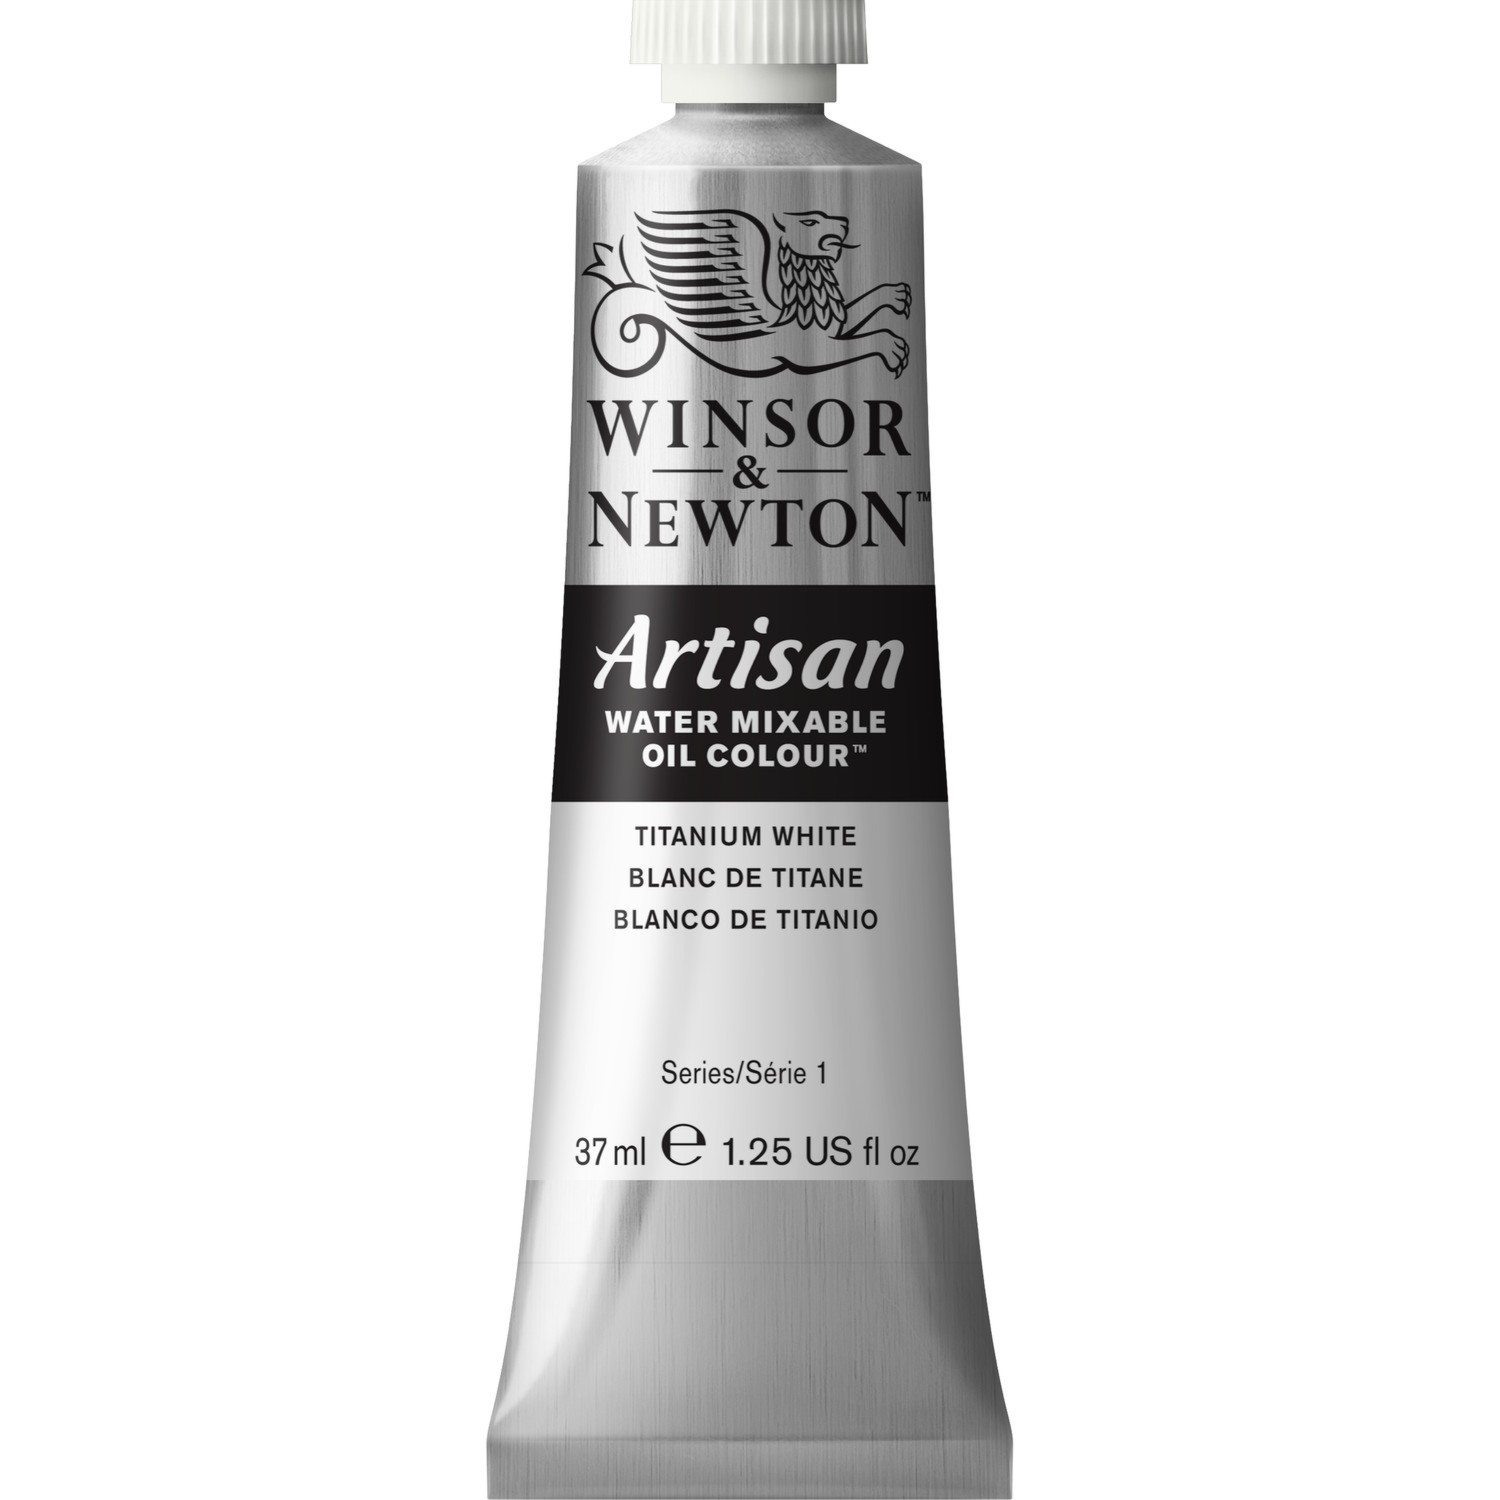 Winsor and Newton 37ml Artisan Mixable Oil Paint - Titanium White Image 1